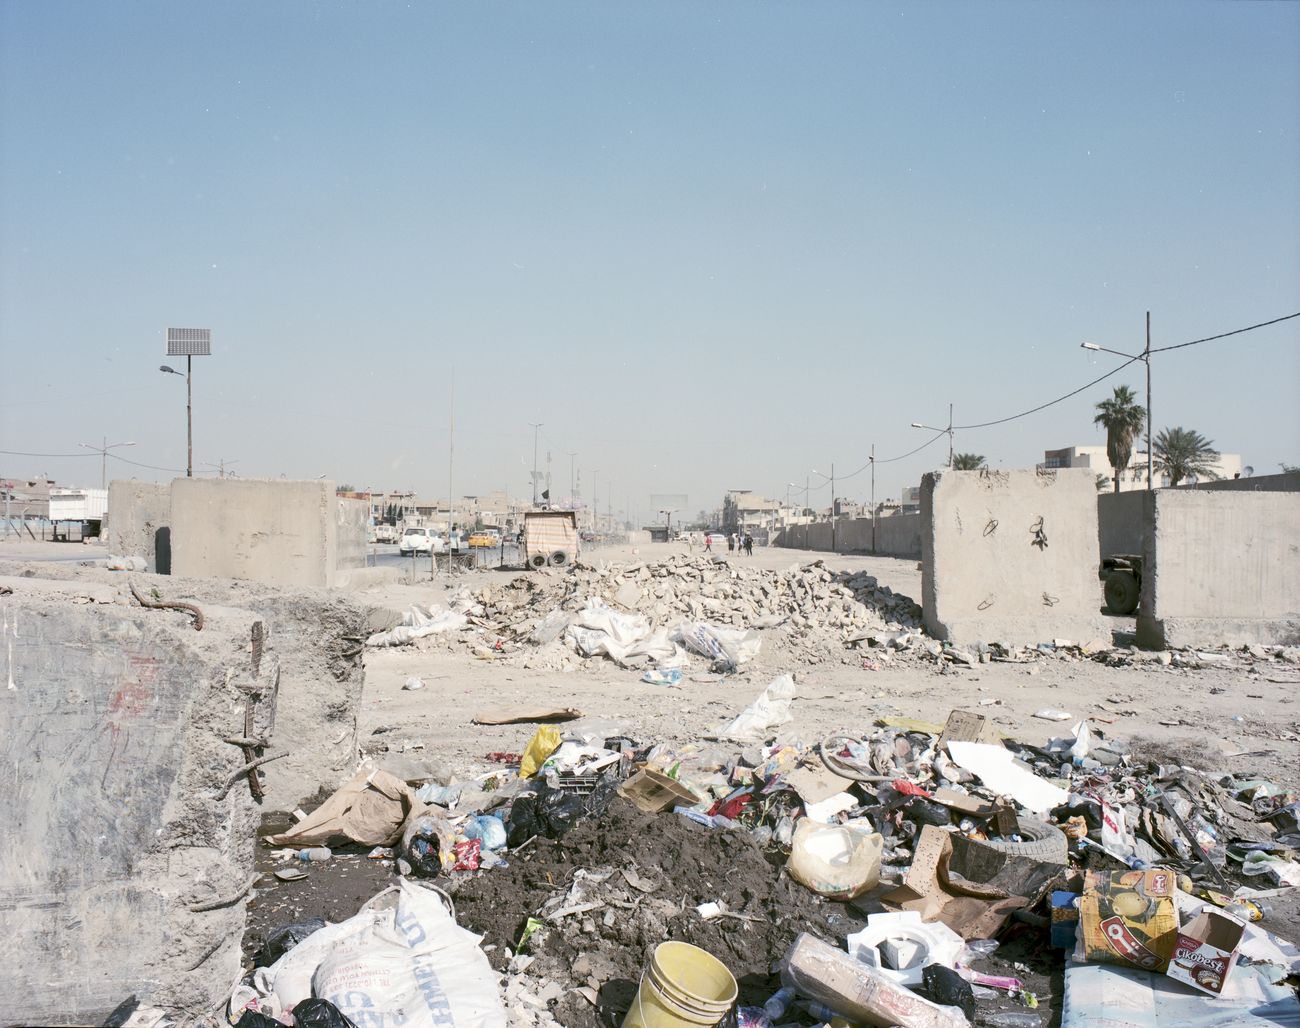 Antonio Ottomanelli, Collateral Landscape - Baghdad, Sadr City, 2014